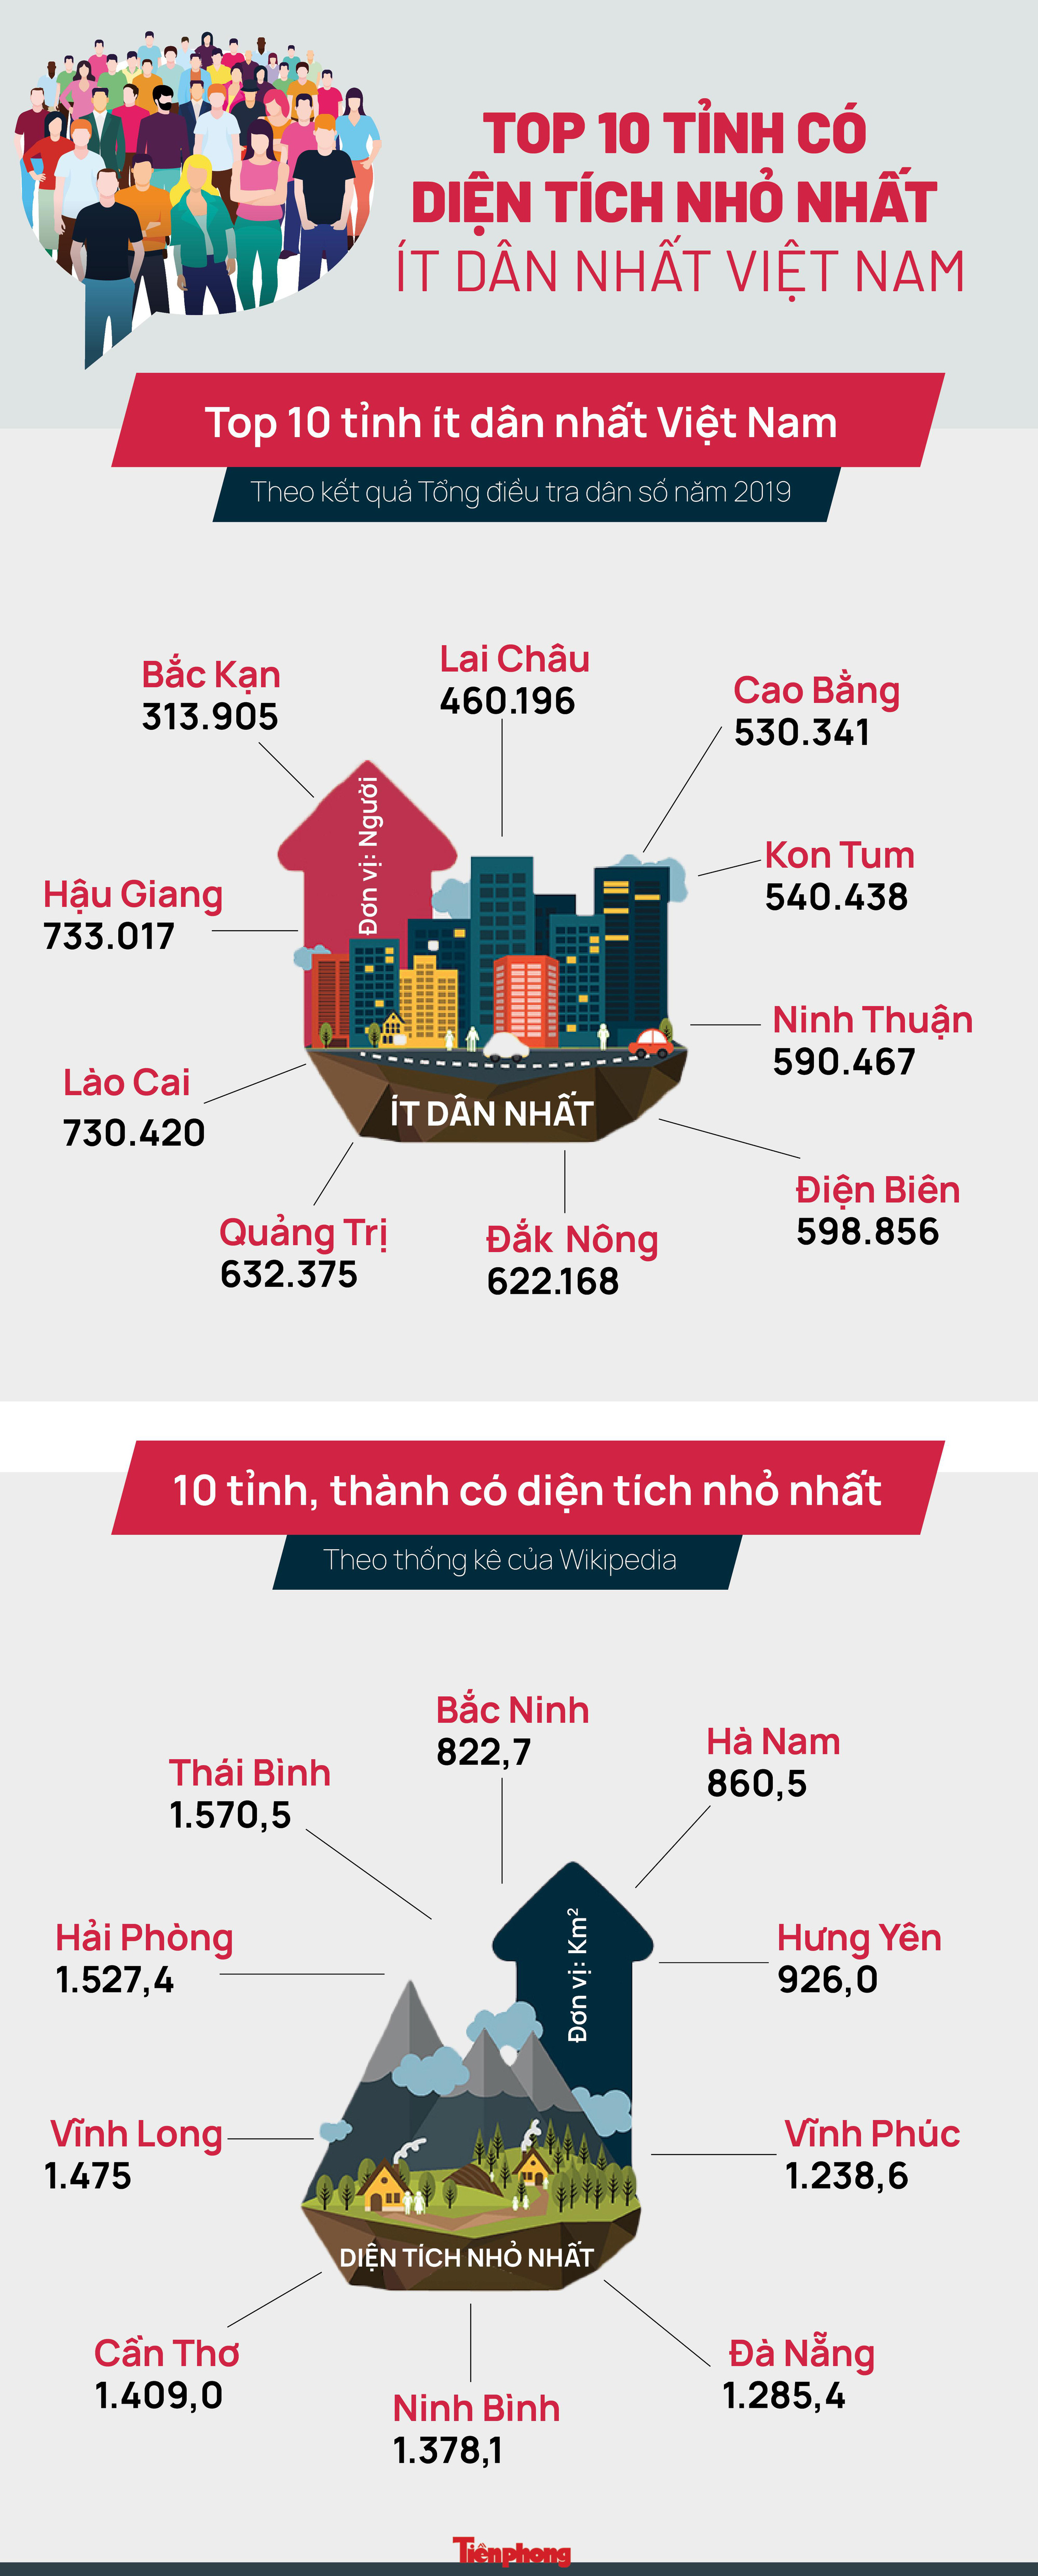 5 tỉnh có diện tích nhỏ nhất Việt Nam